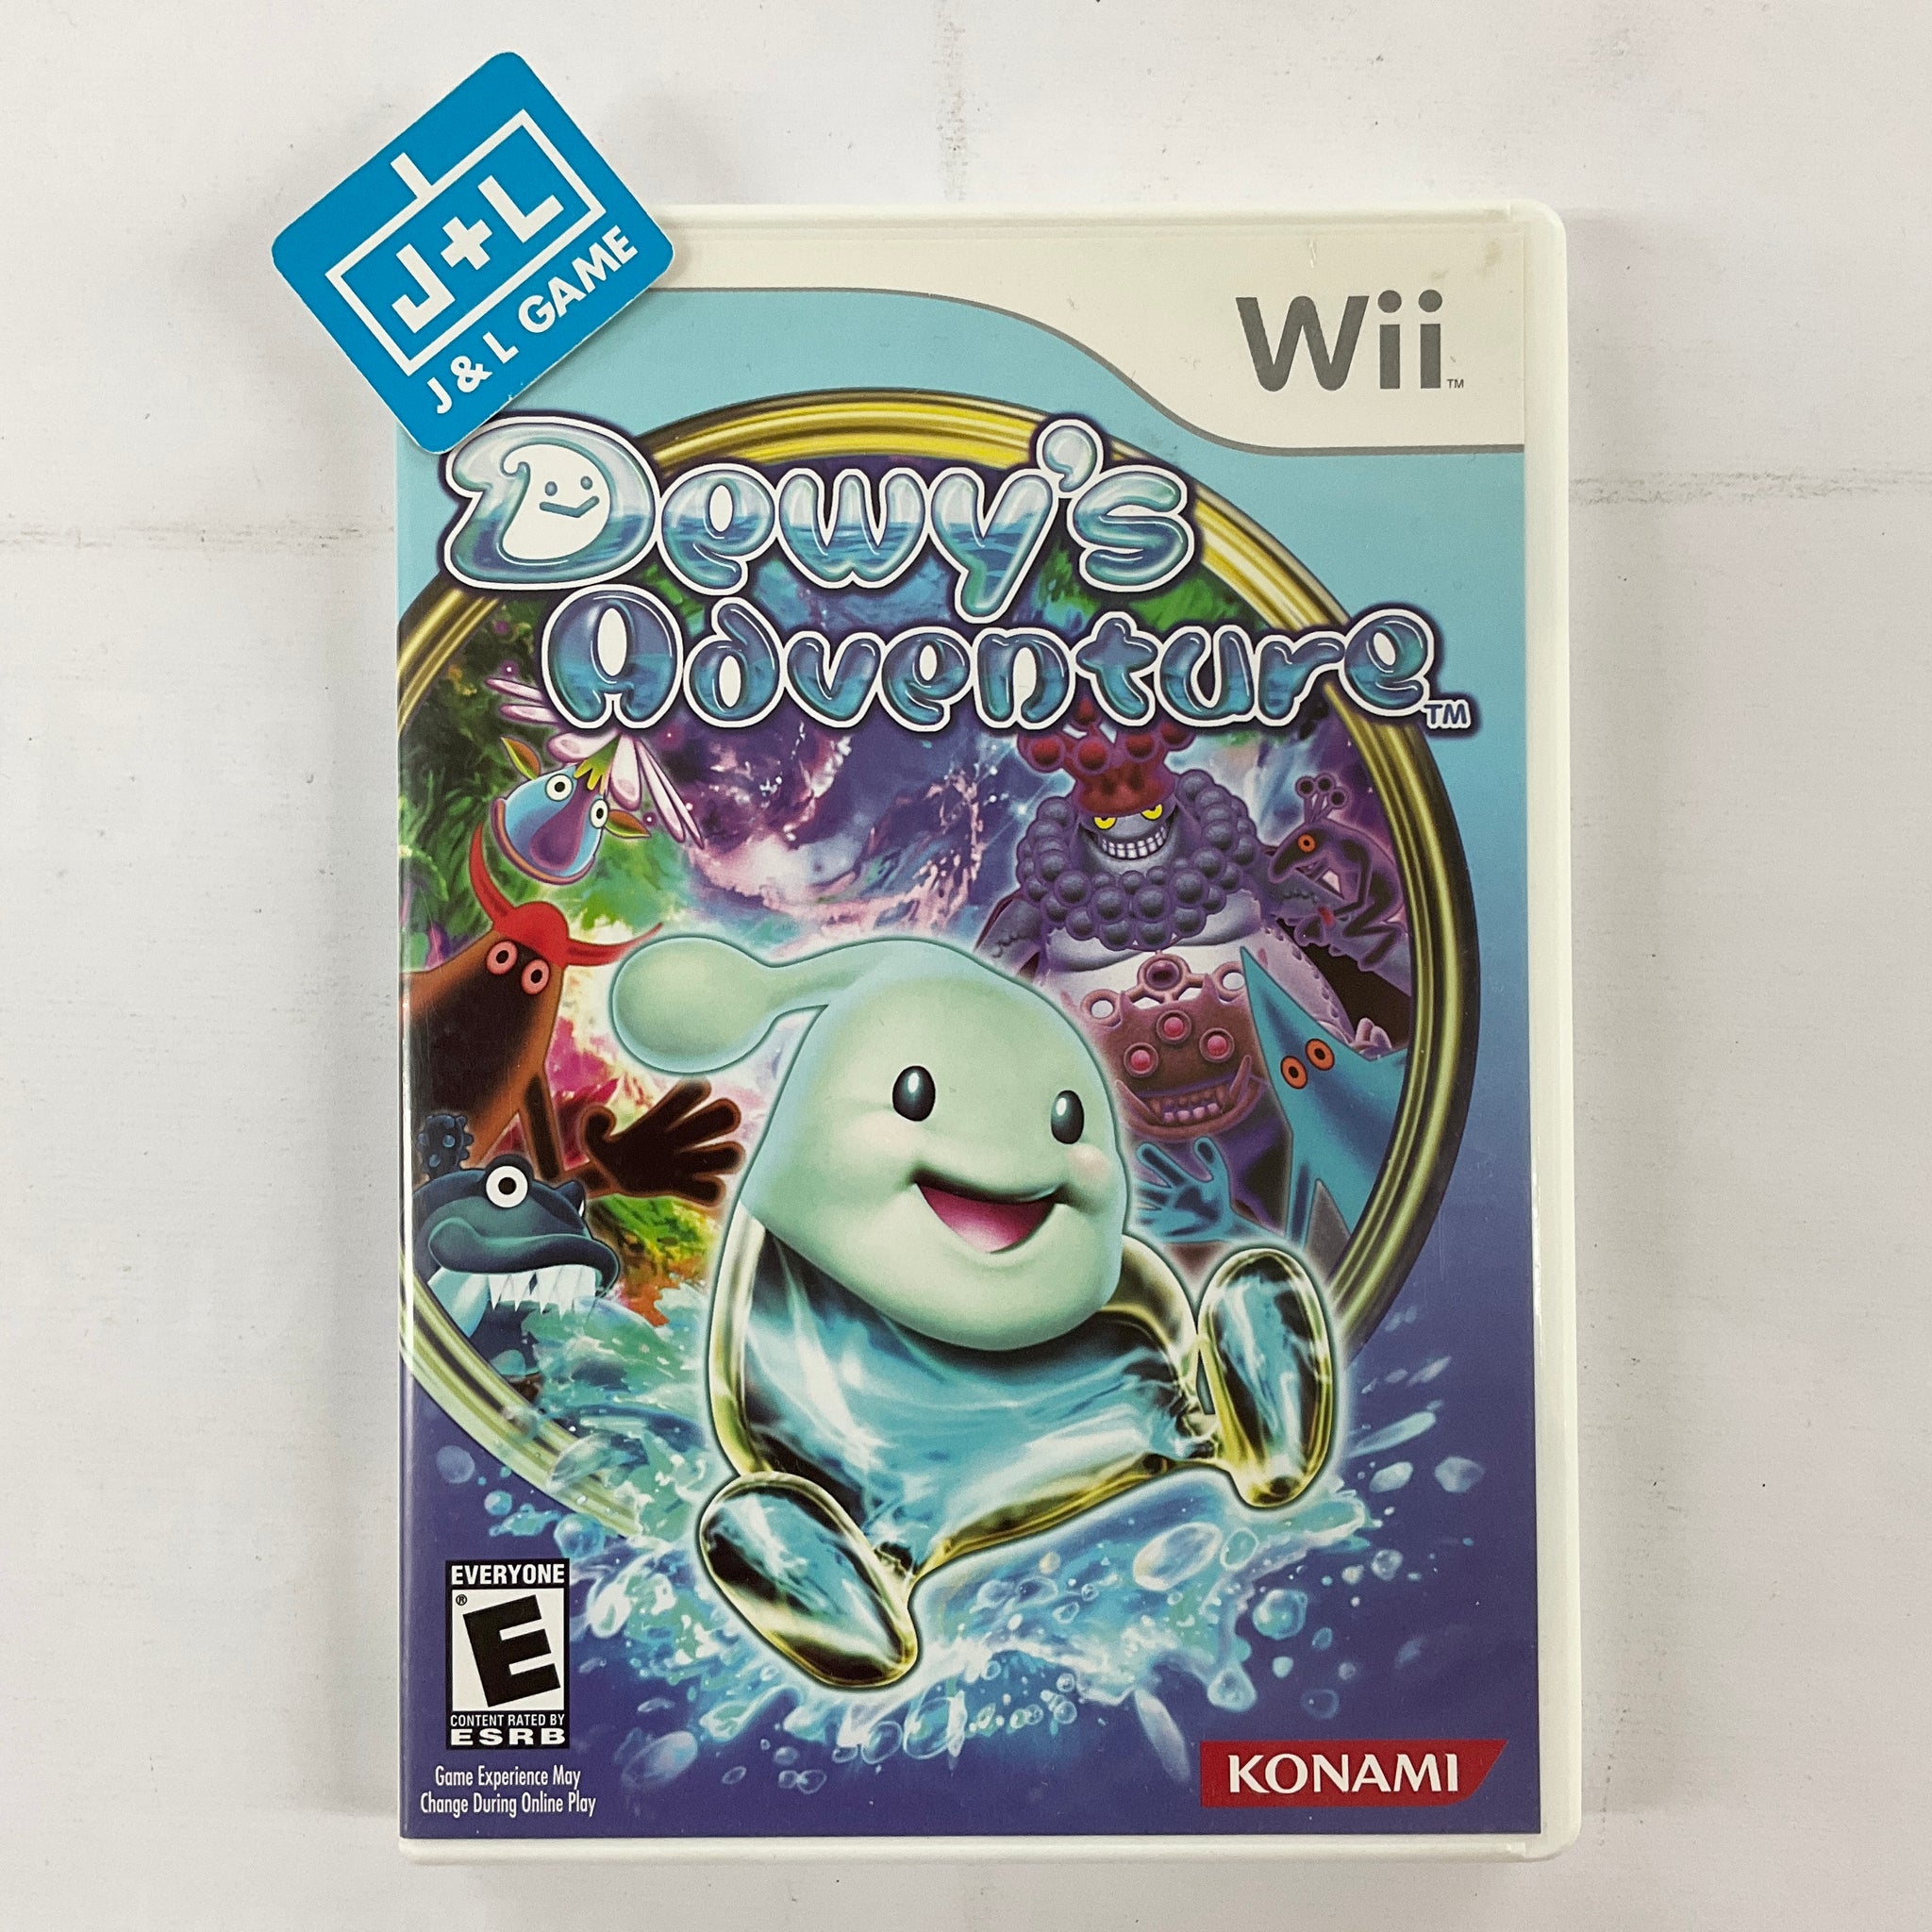 Dewy's Adventure - Nintendo Wii [Pre-Owned] Video Games Konami   